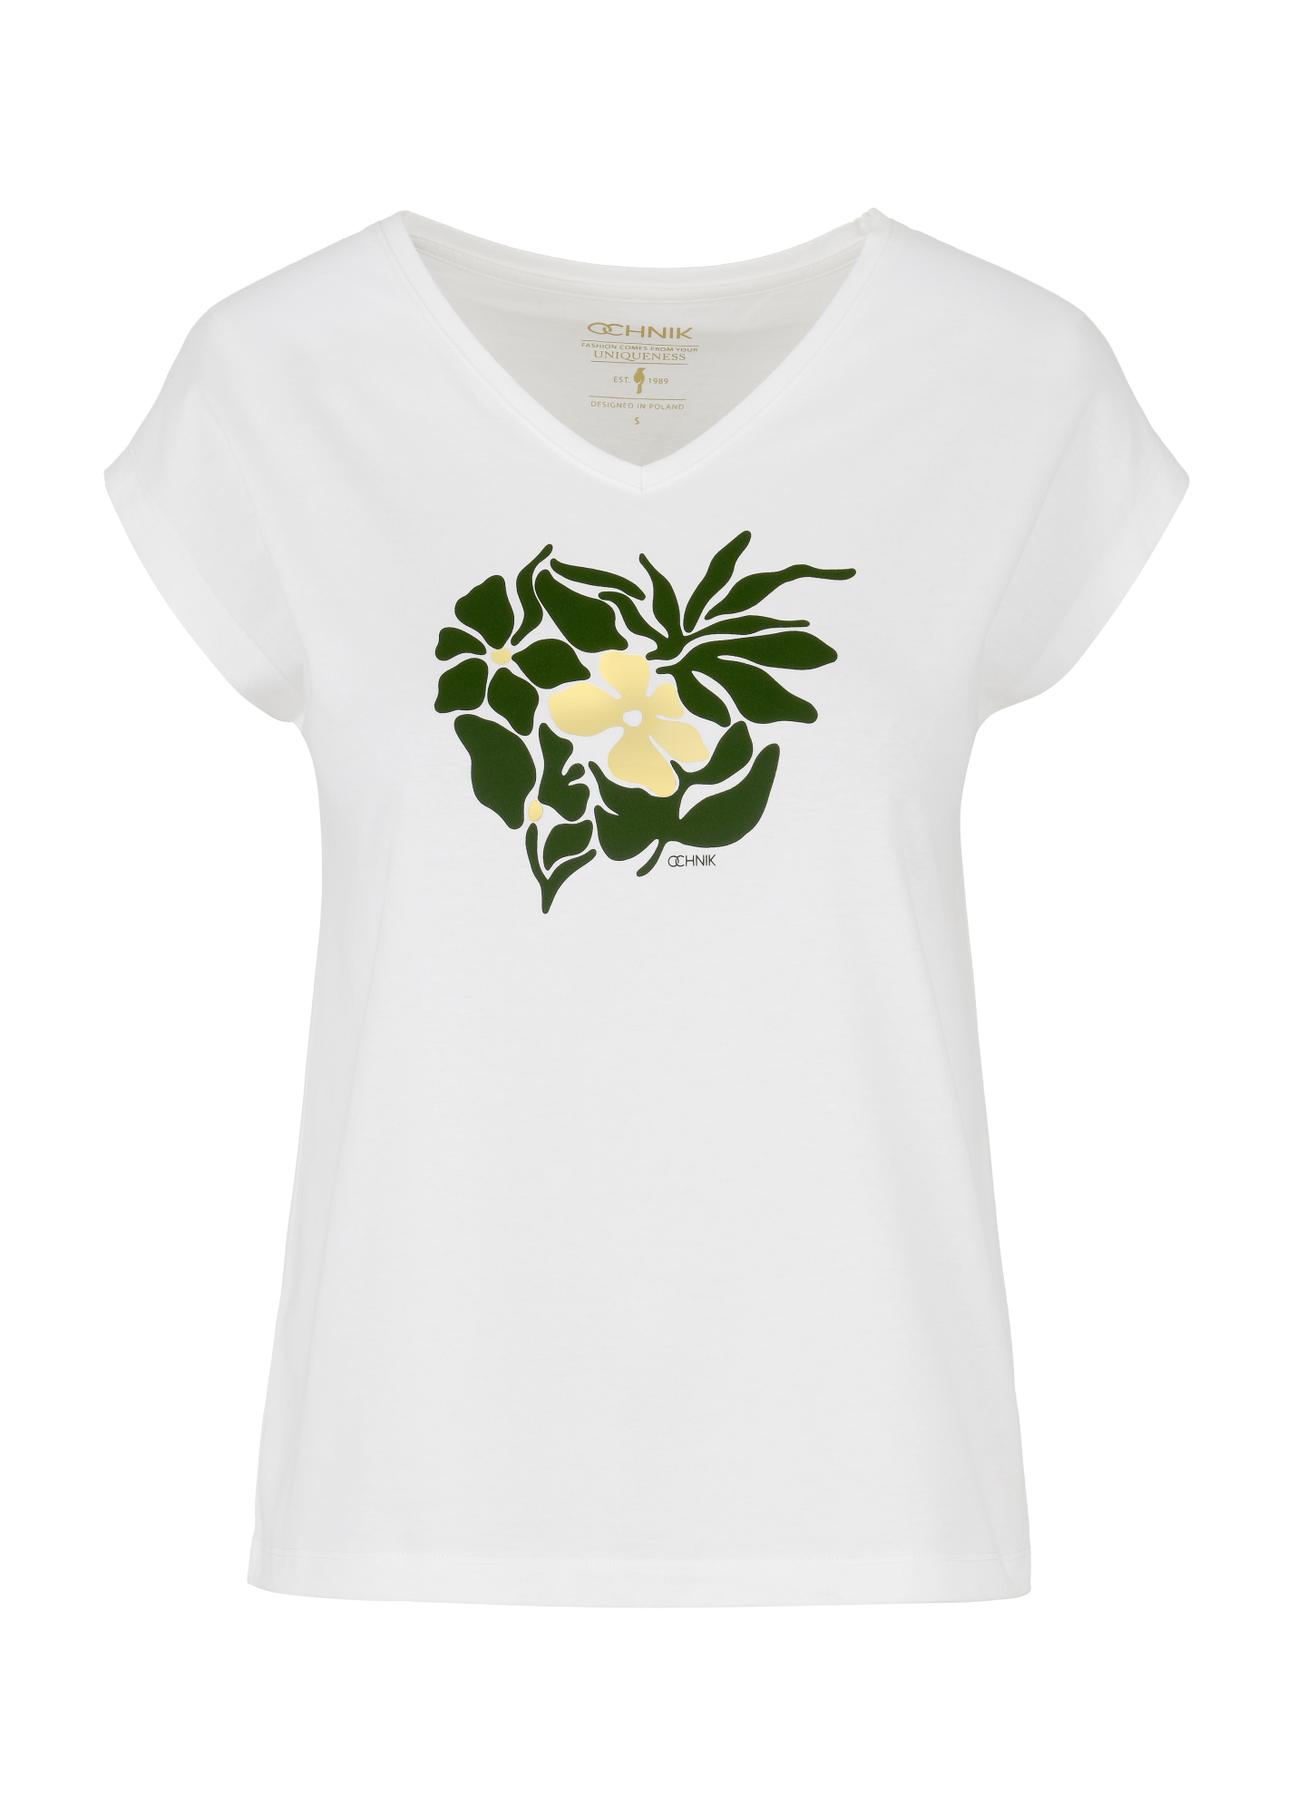 T-shirt damski kremowy z kwiatowym printem TSHDT-0125-12(W24)